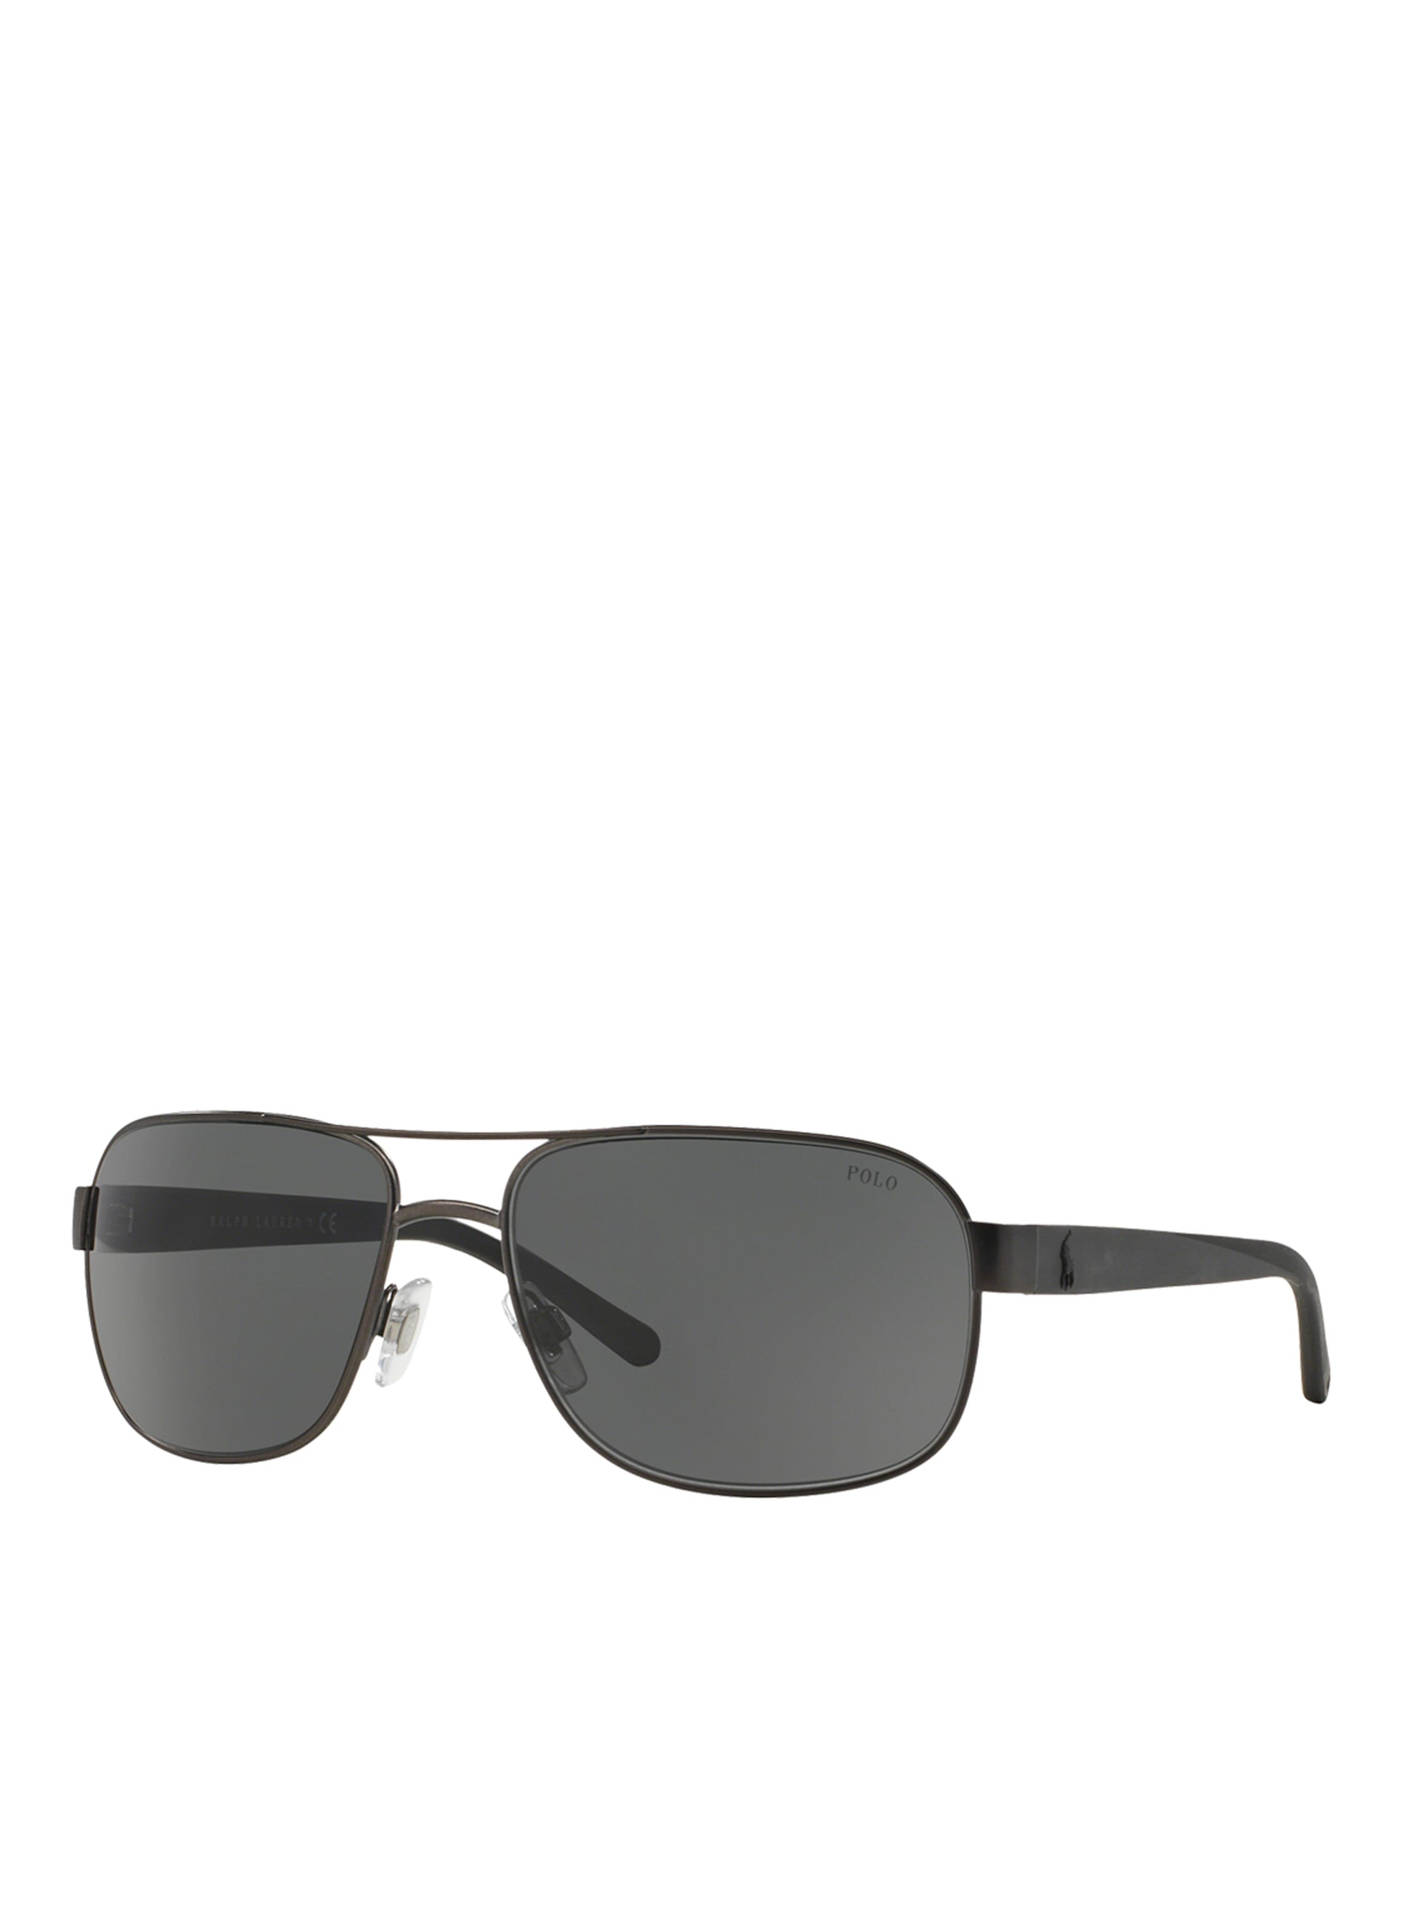 Sorte briller med sorte linser på polo solbriller Wallpaper